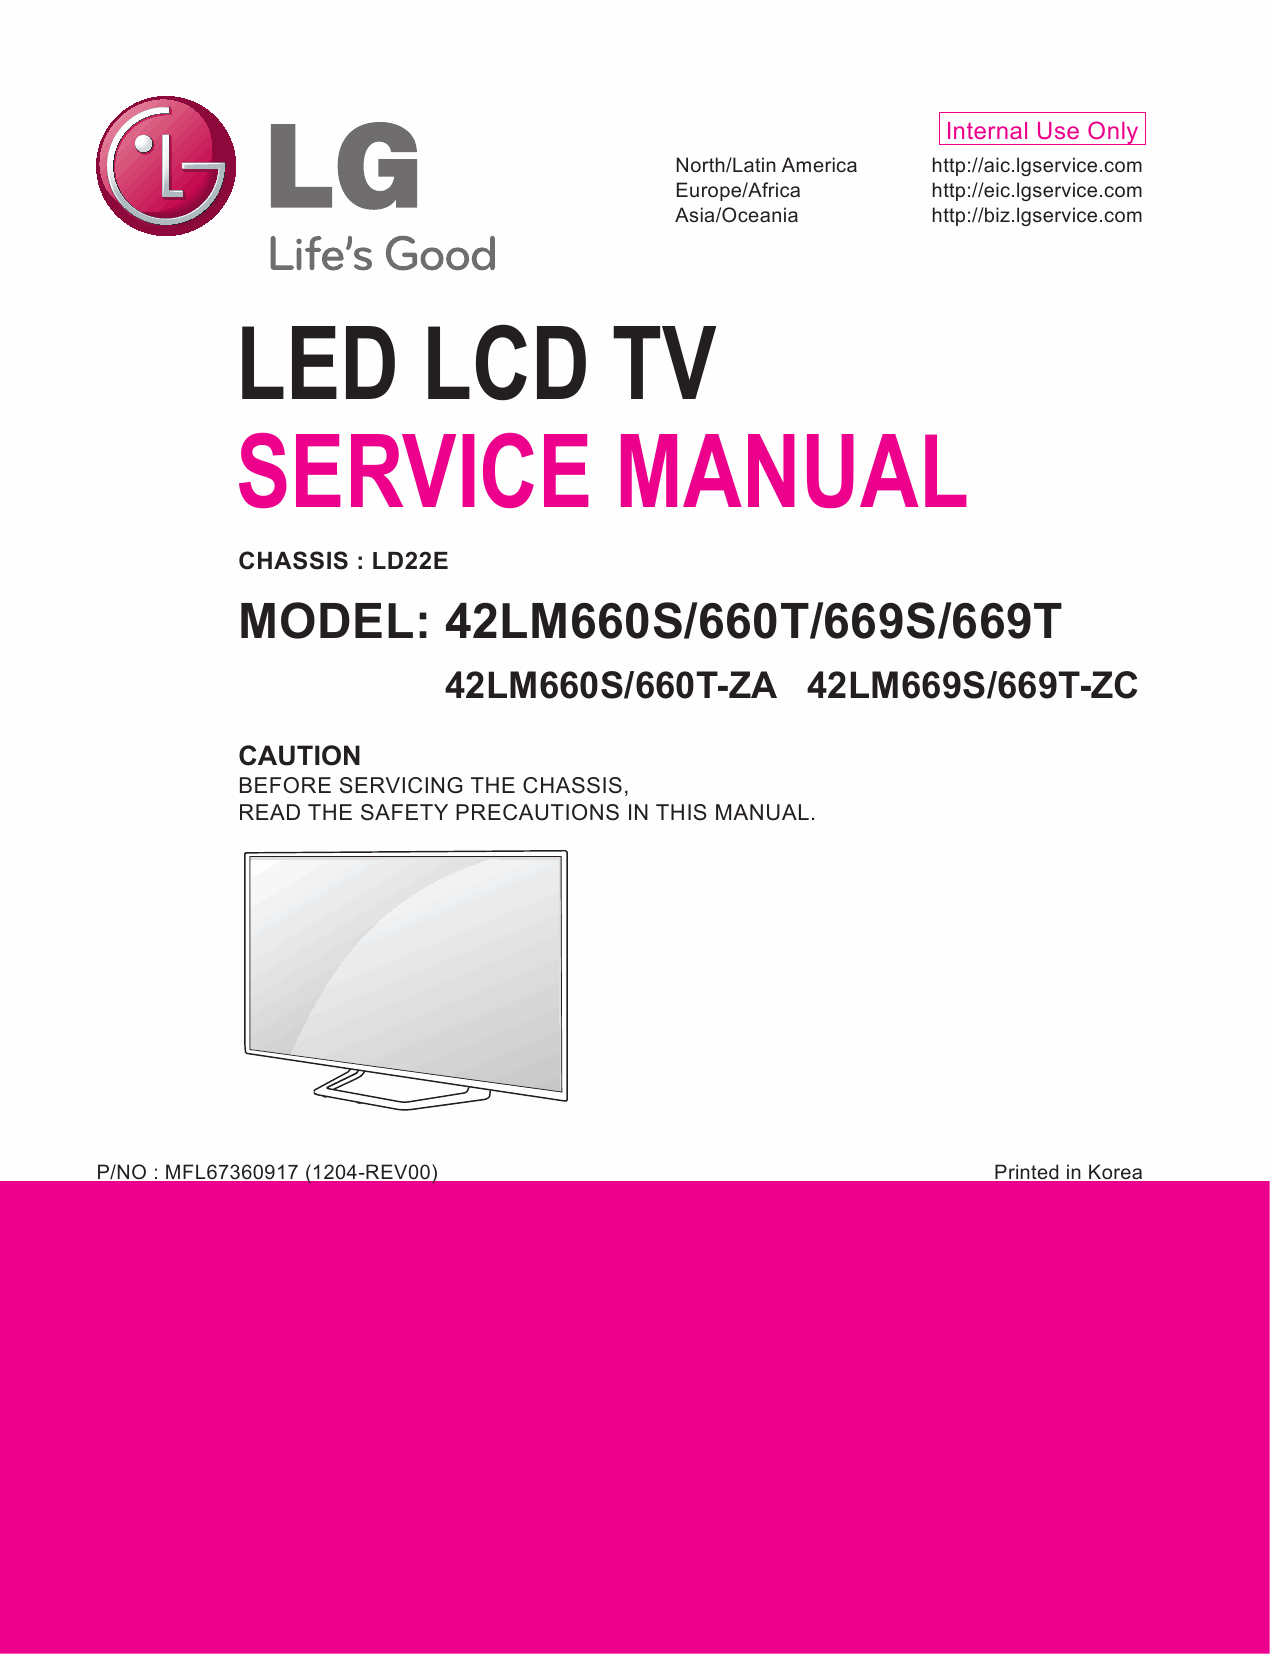 LG_LCD_TV_42LM660S_660T_669S_669T_Service_Manual_2012_Qmanual.com-1